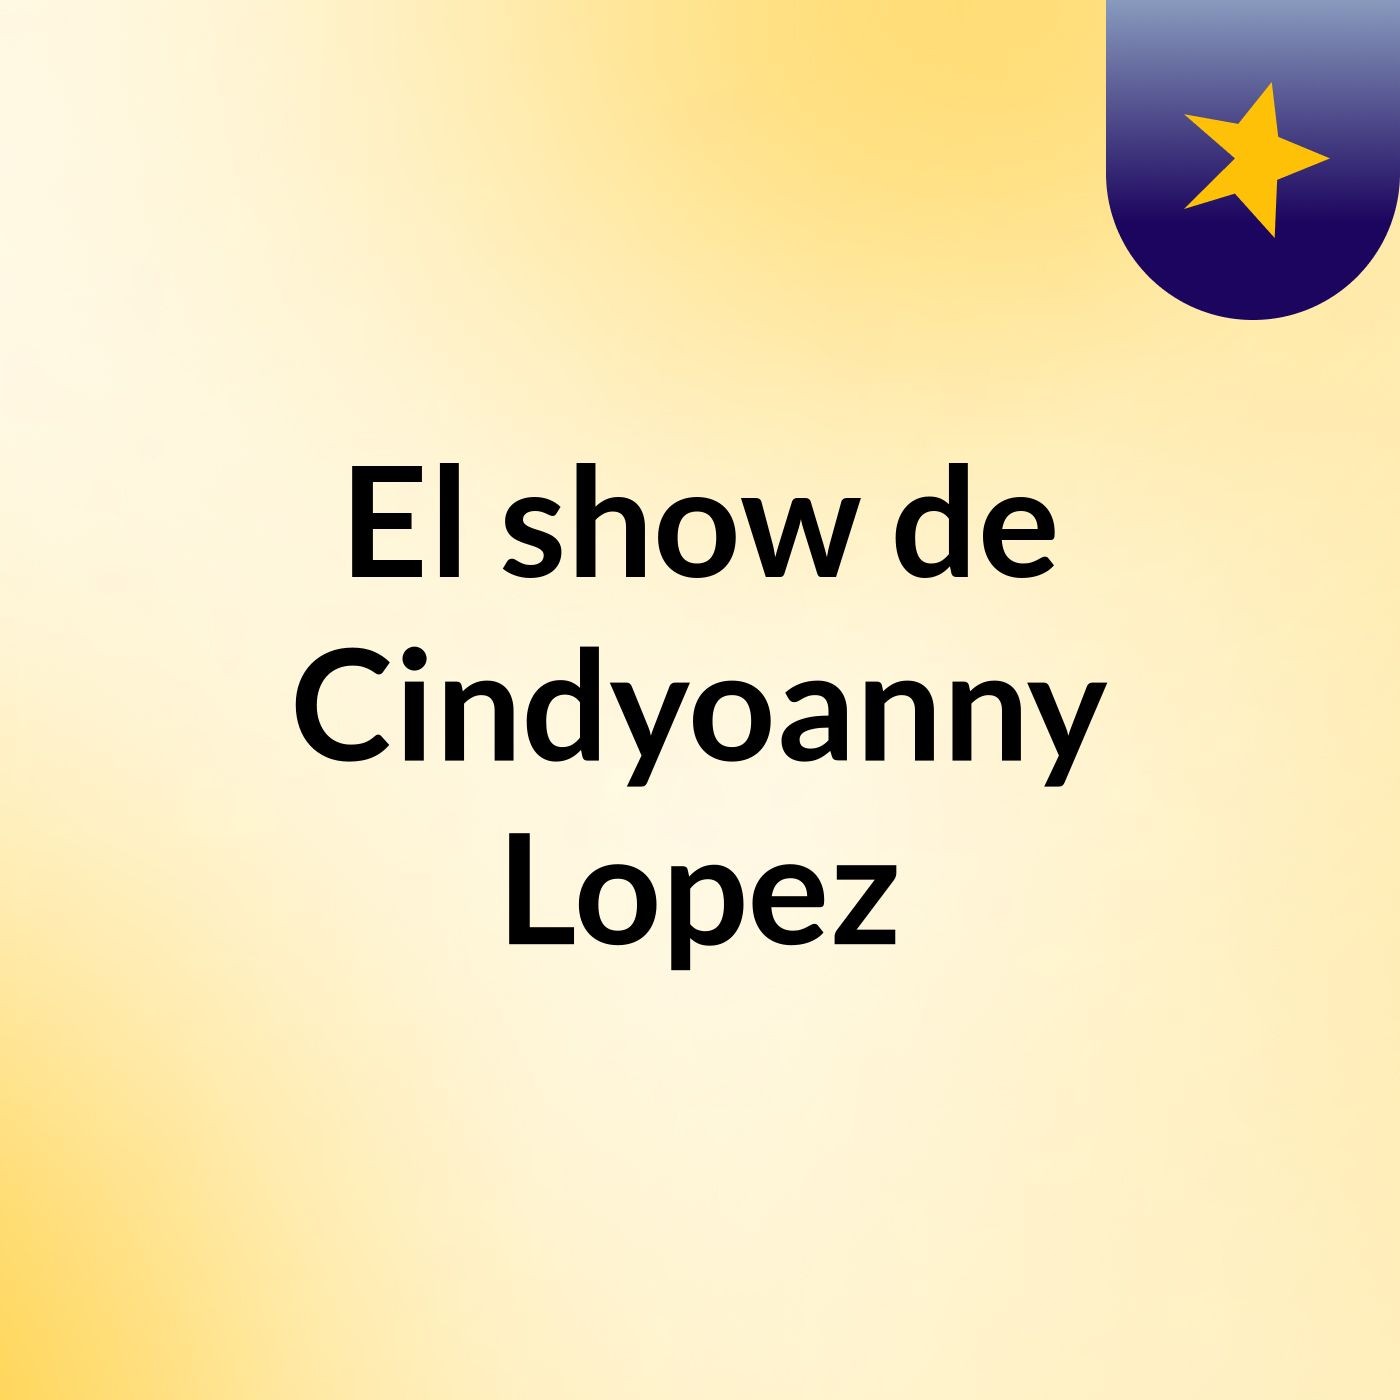 El Mejor De Todos Vos: Cindy Lopez